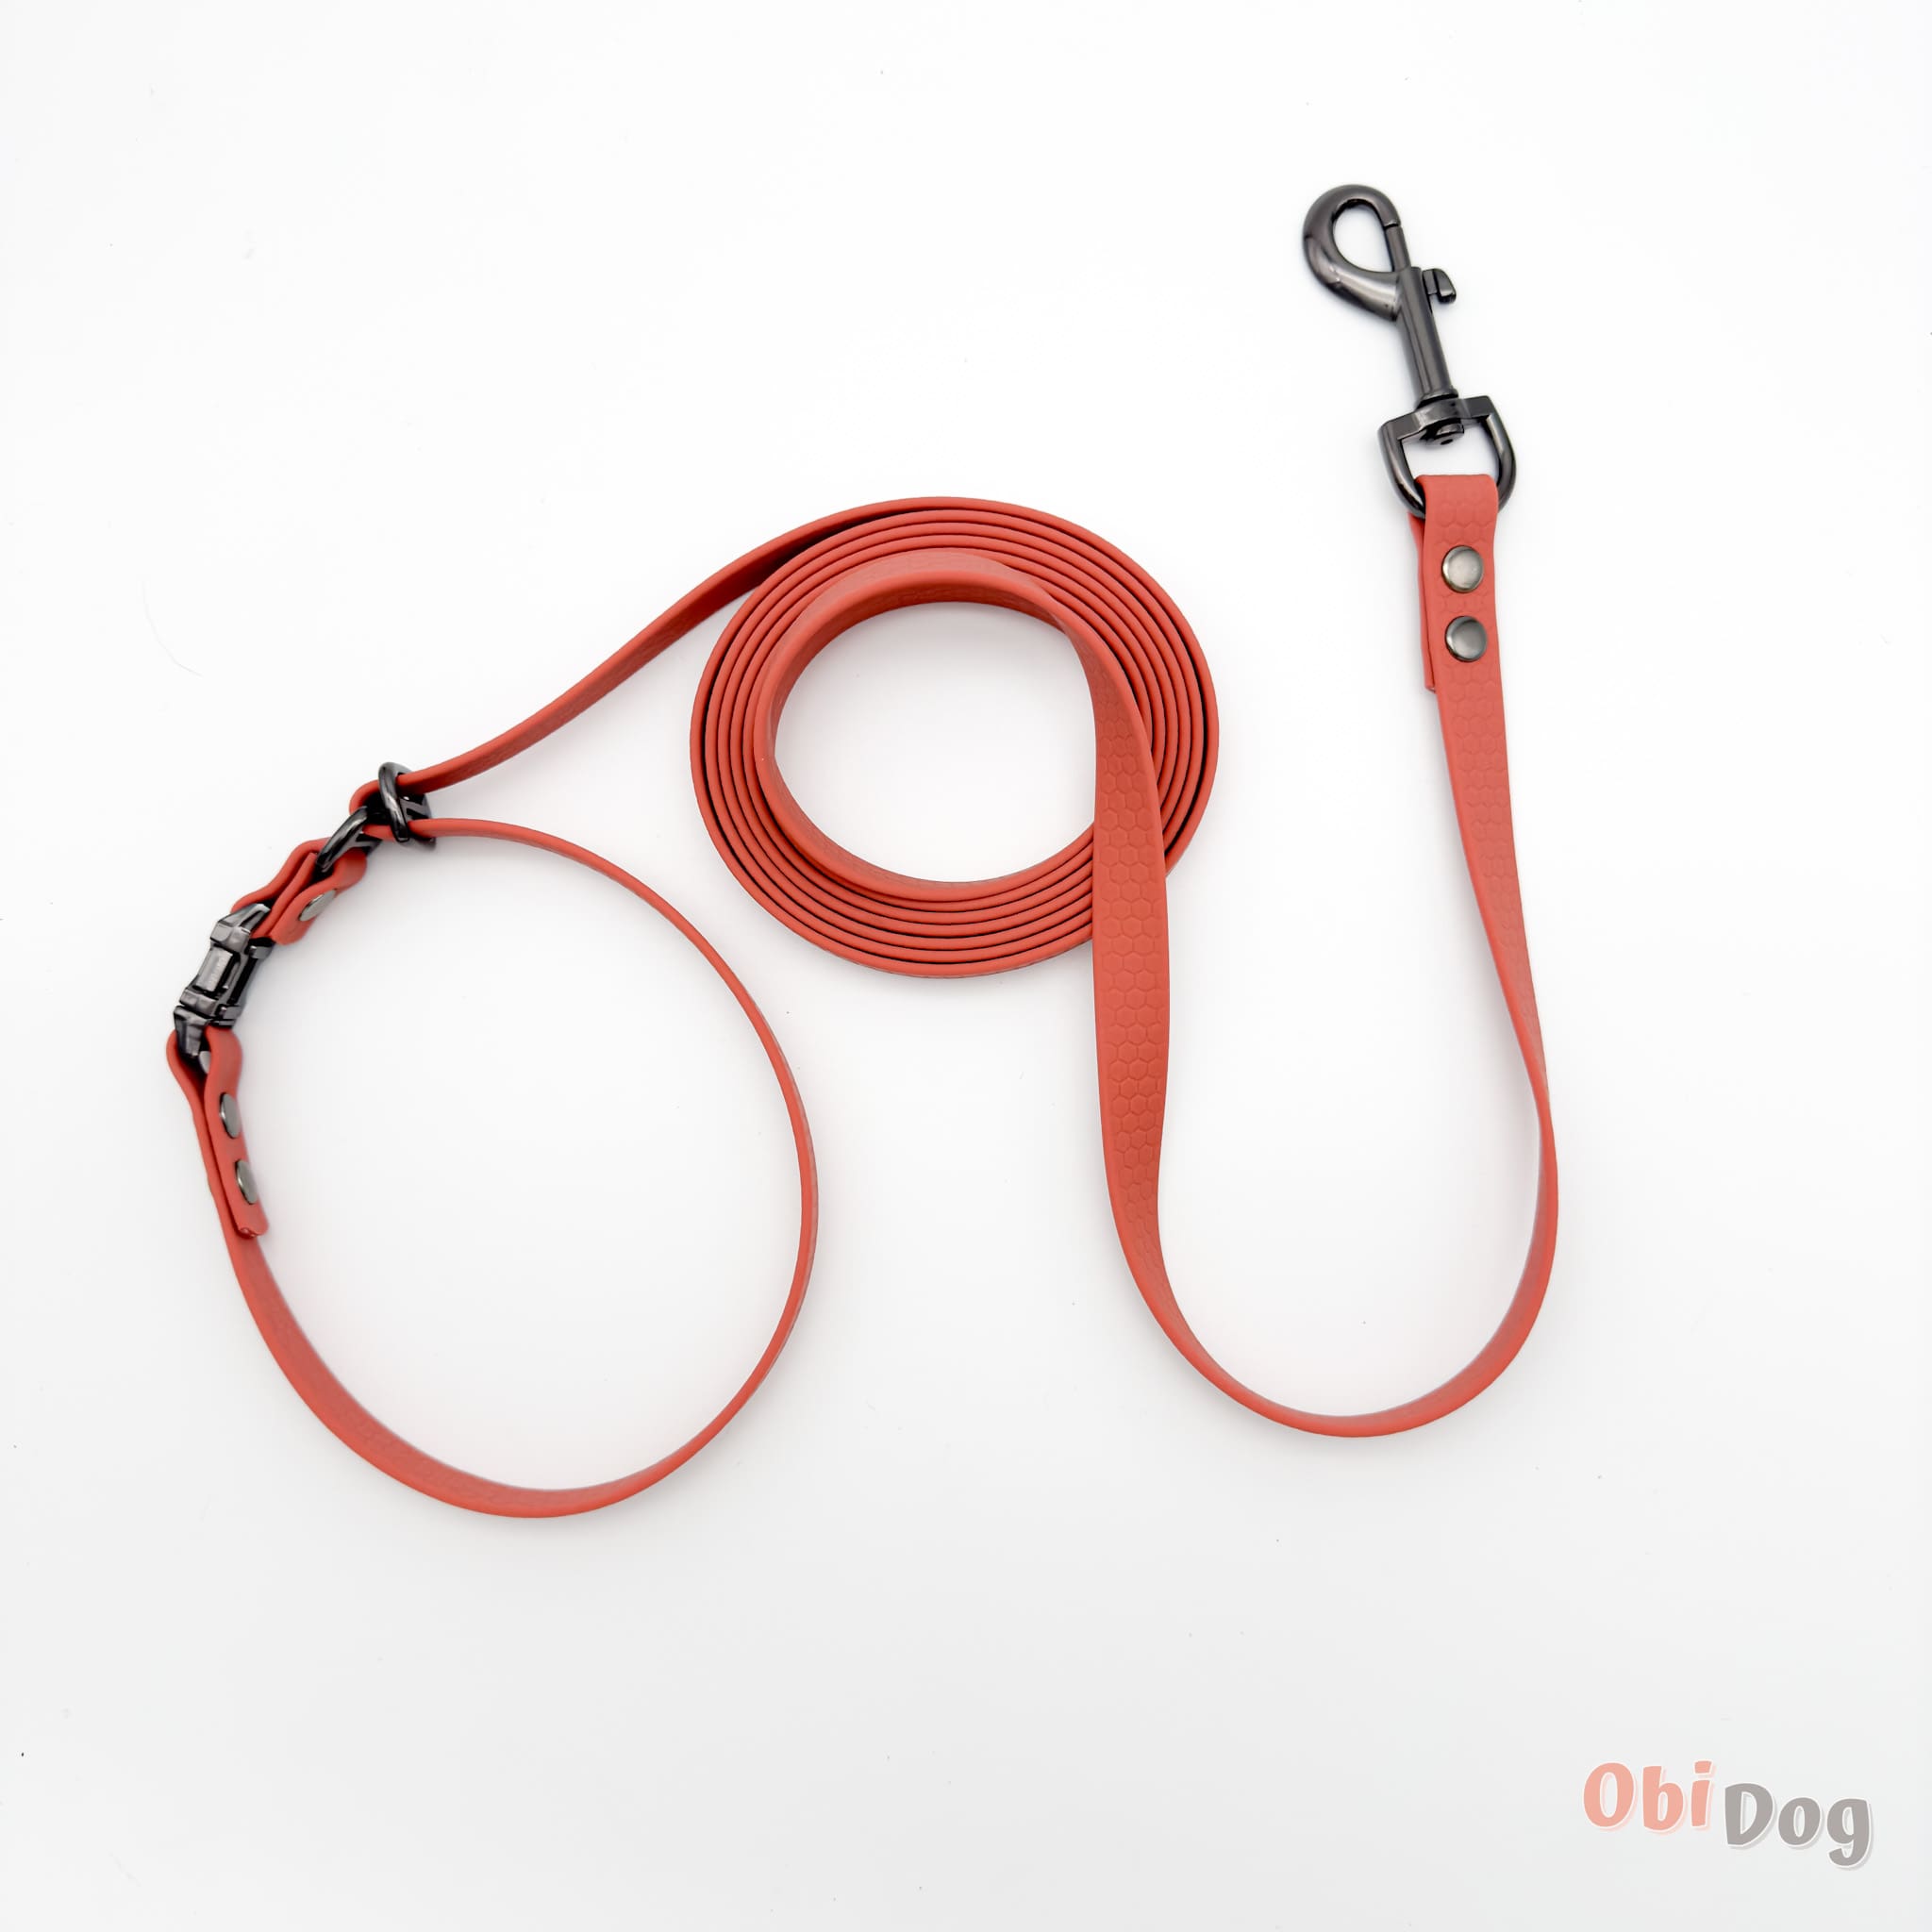 ObiDog, Hexa 5-vienā pavada suņiem - Persiku